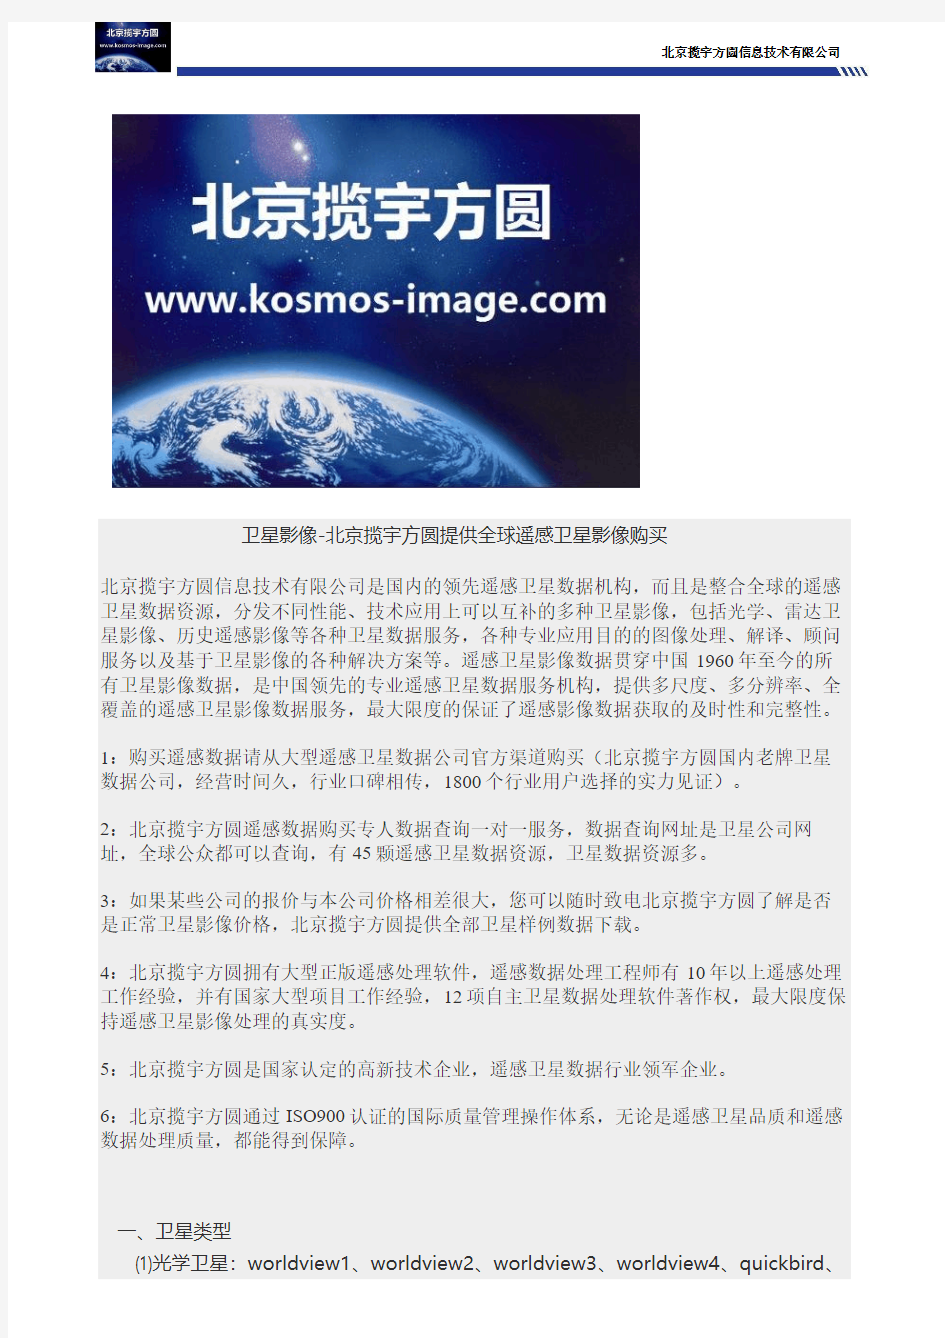 卫星影像-北京揽宇方圆提供全球遥感卫星影像购买